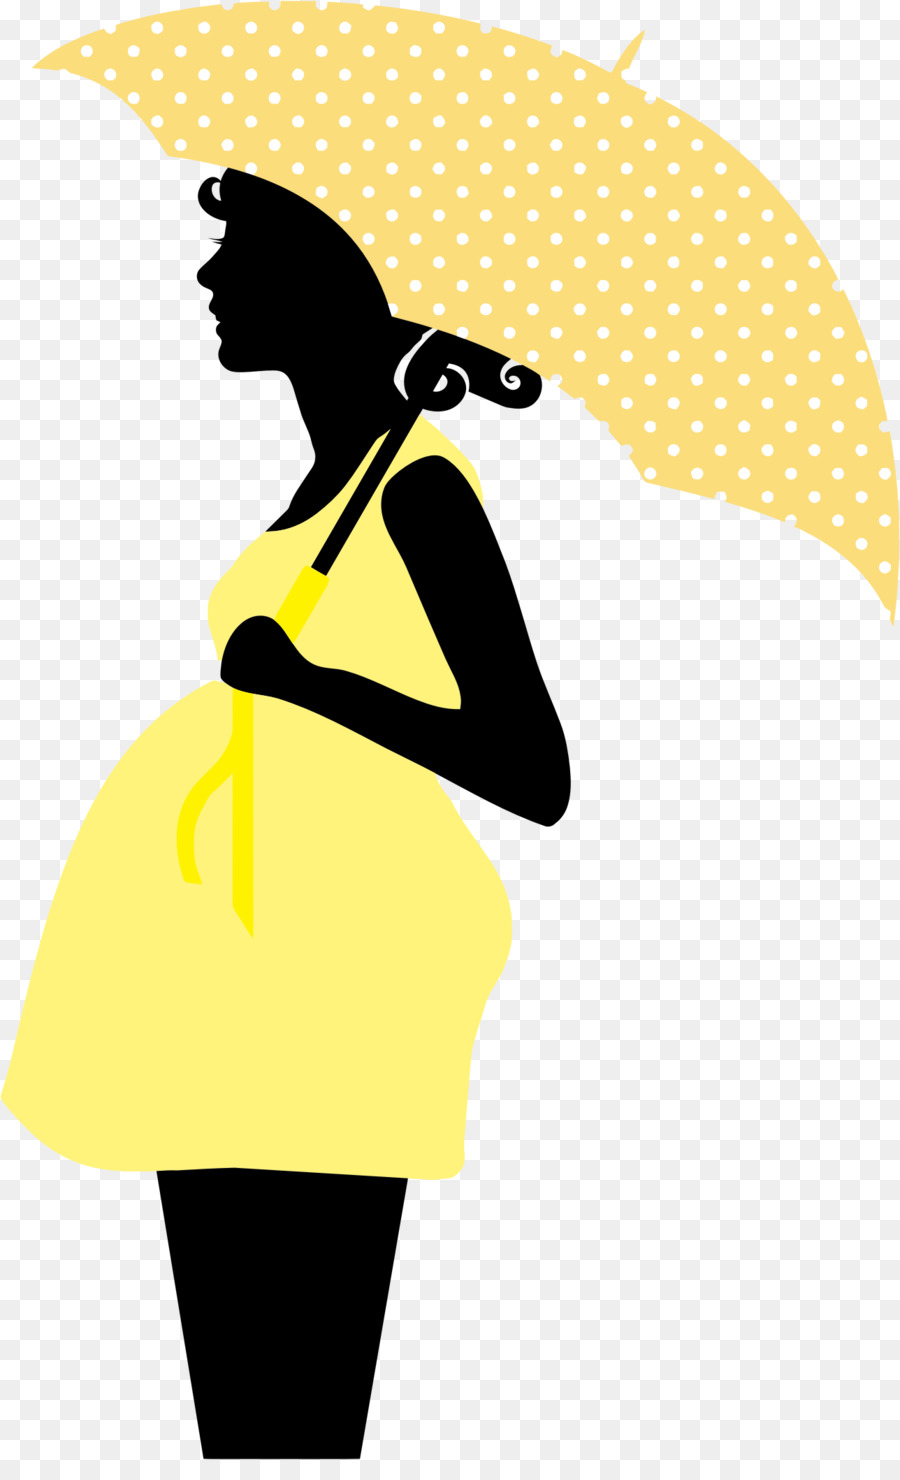 Pregnancy Woman Clip art - woman day png download - 1288*2090 - Free Transparent Pregnancy png Download.